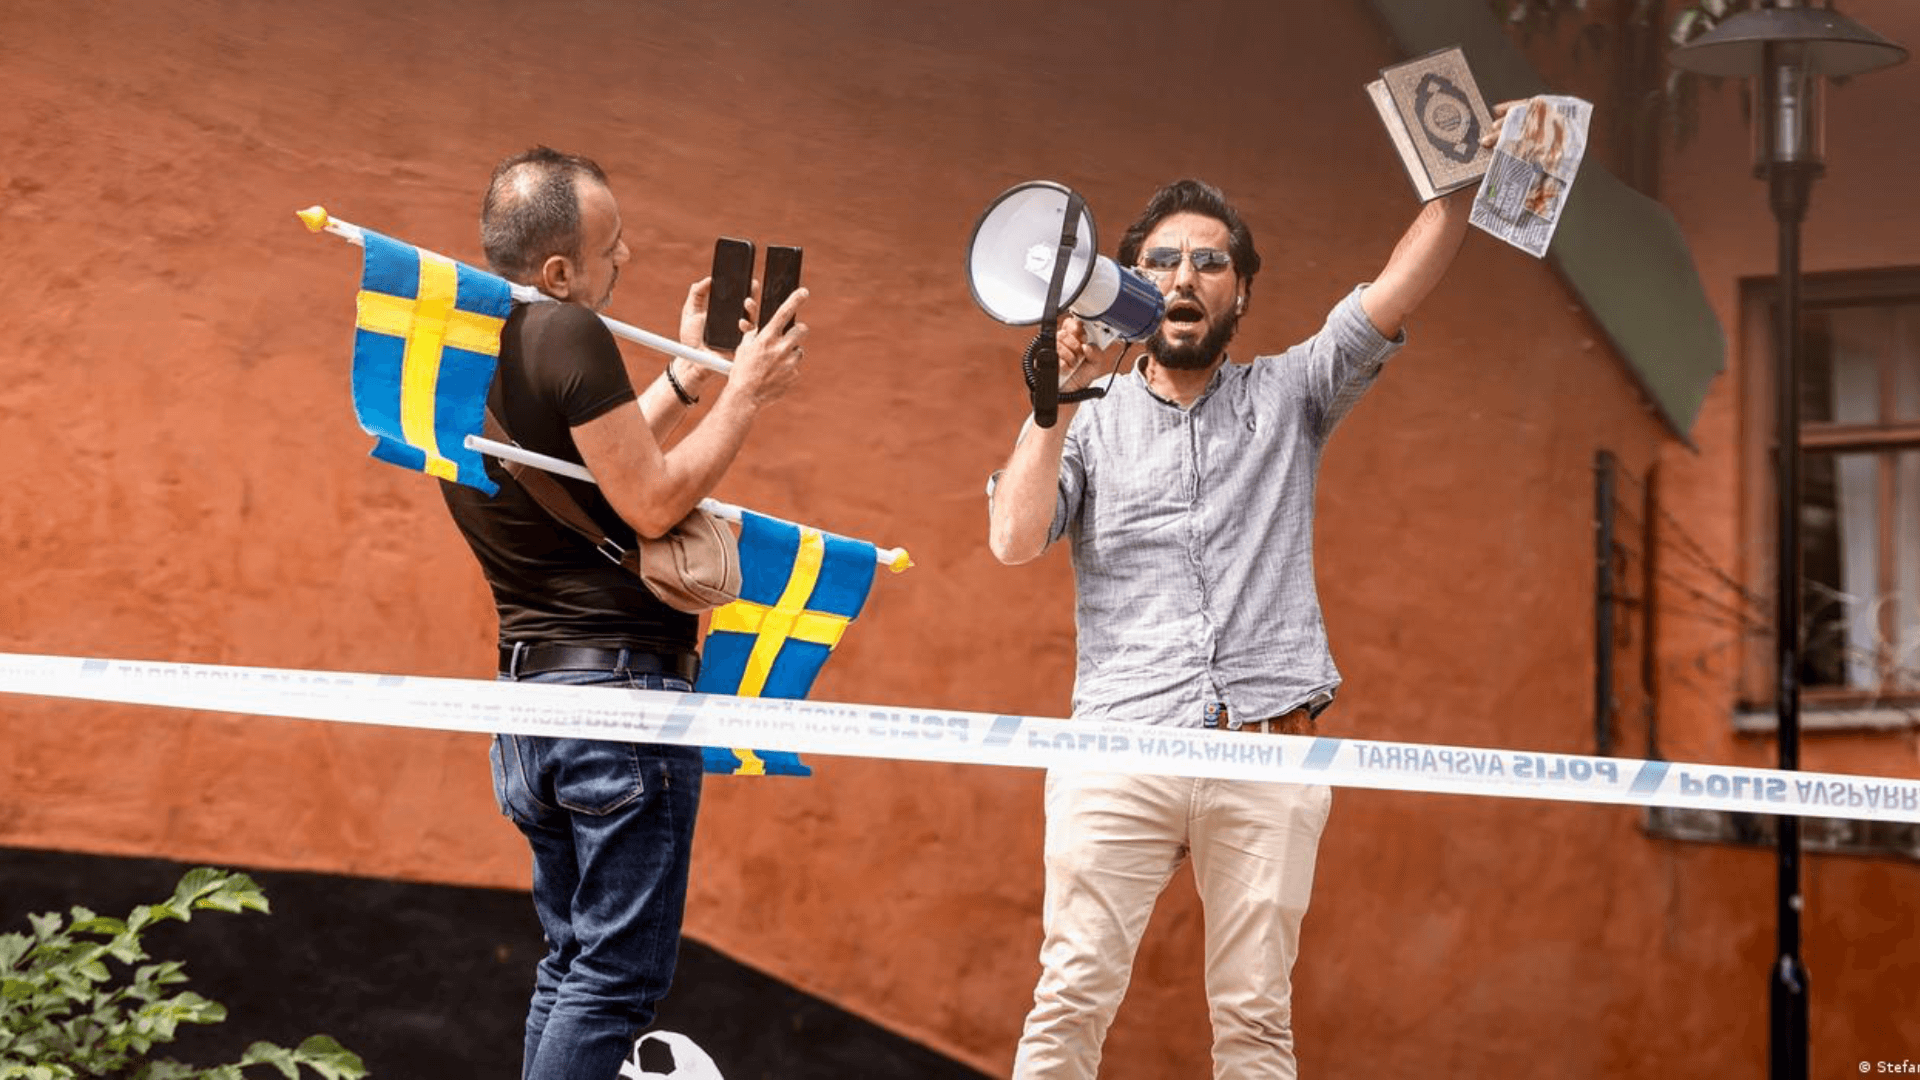 Резолюция ООН после сожжения Корана в Швеции: А как проголосовала ваша страна?